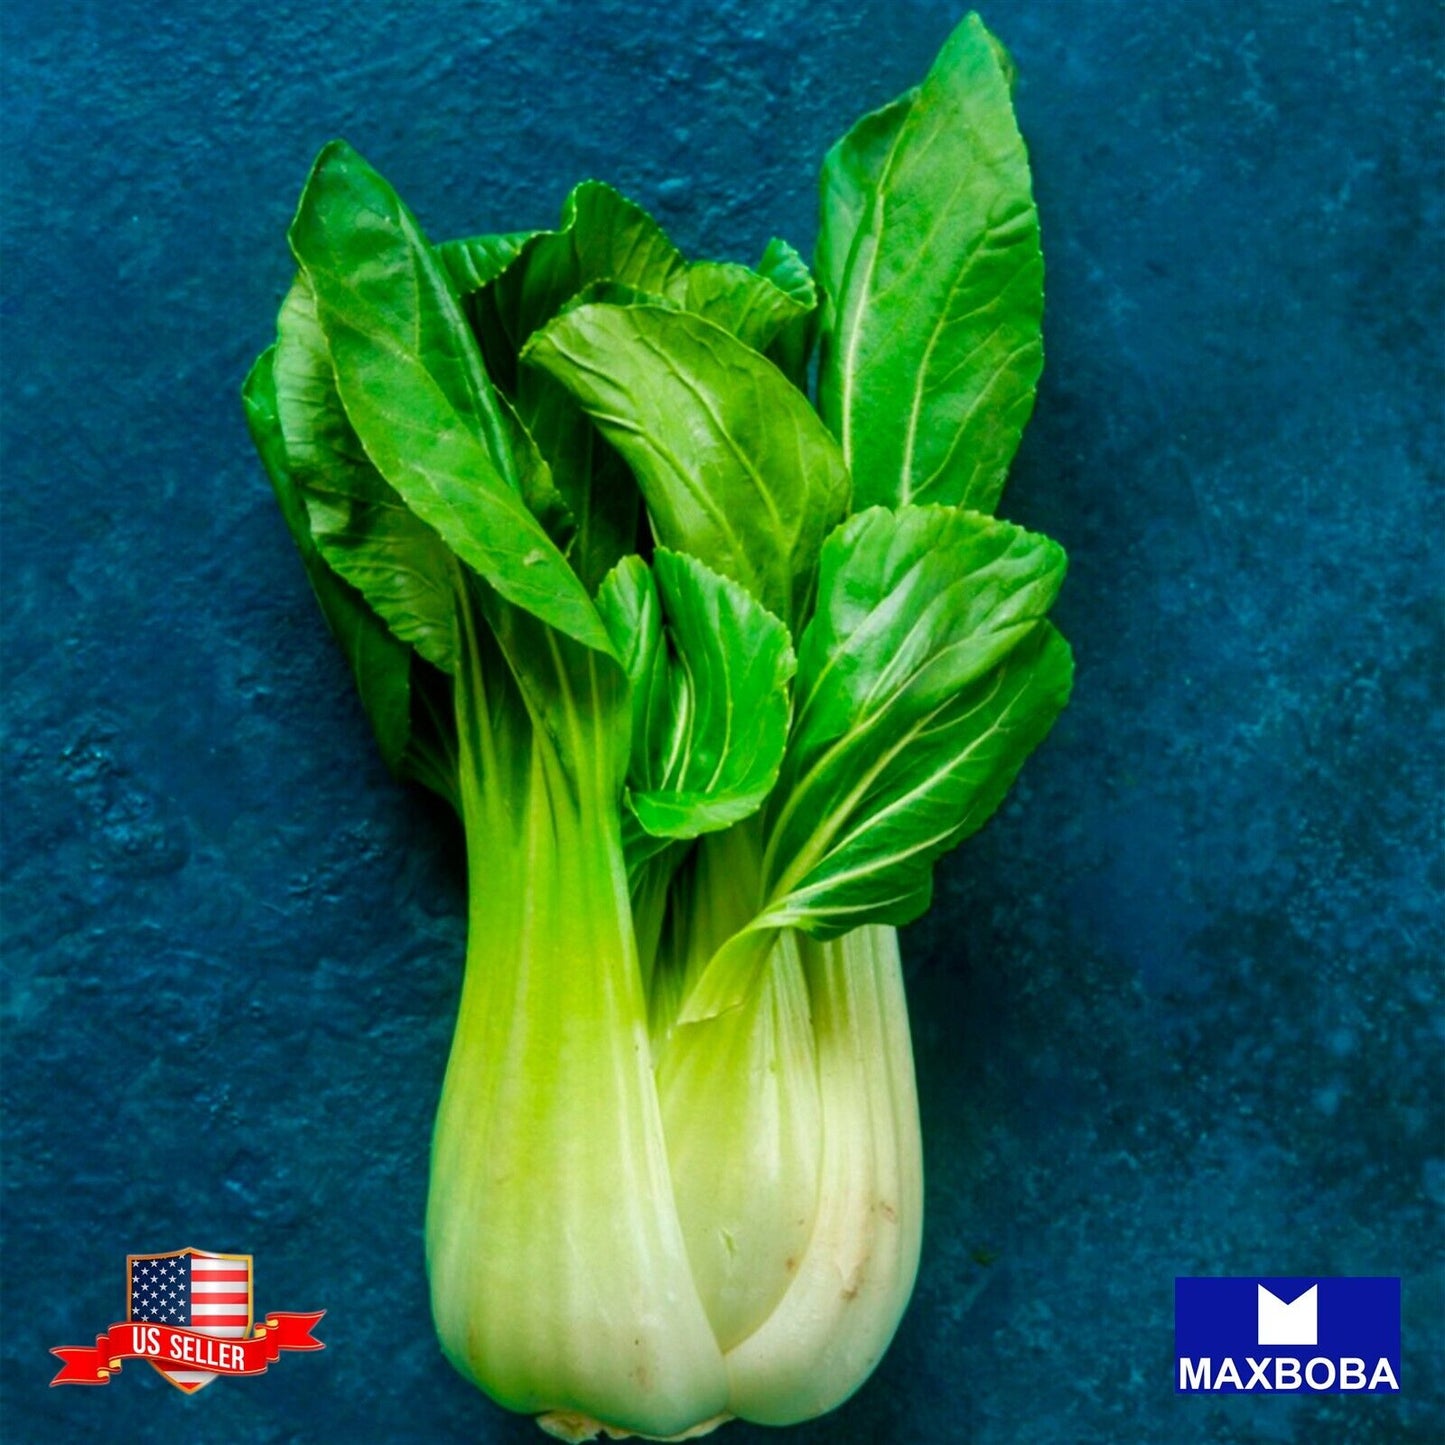 Cabbage Seeds - Pak Choi - Shanghai Non-GMO / Heirloom / Vegetable Garden